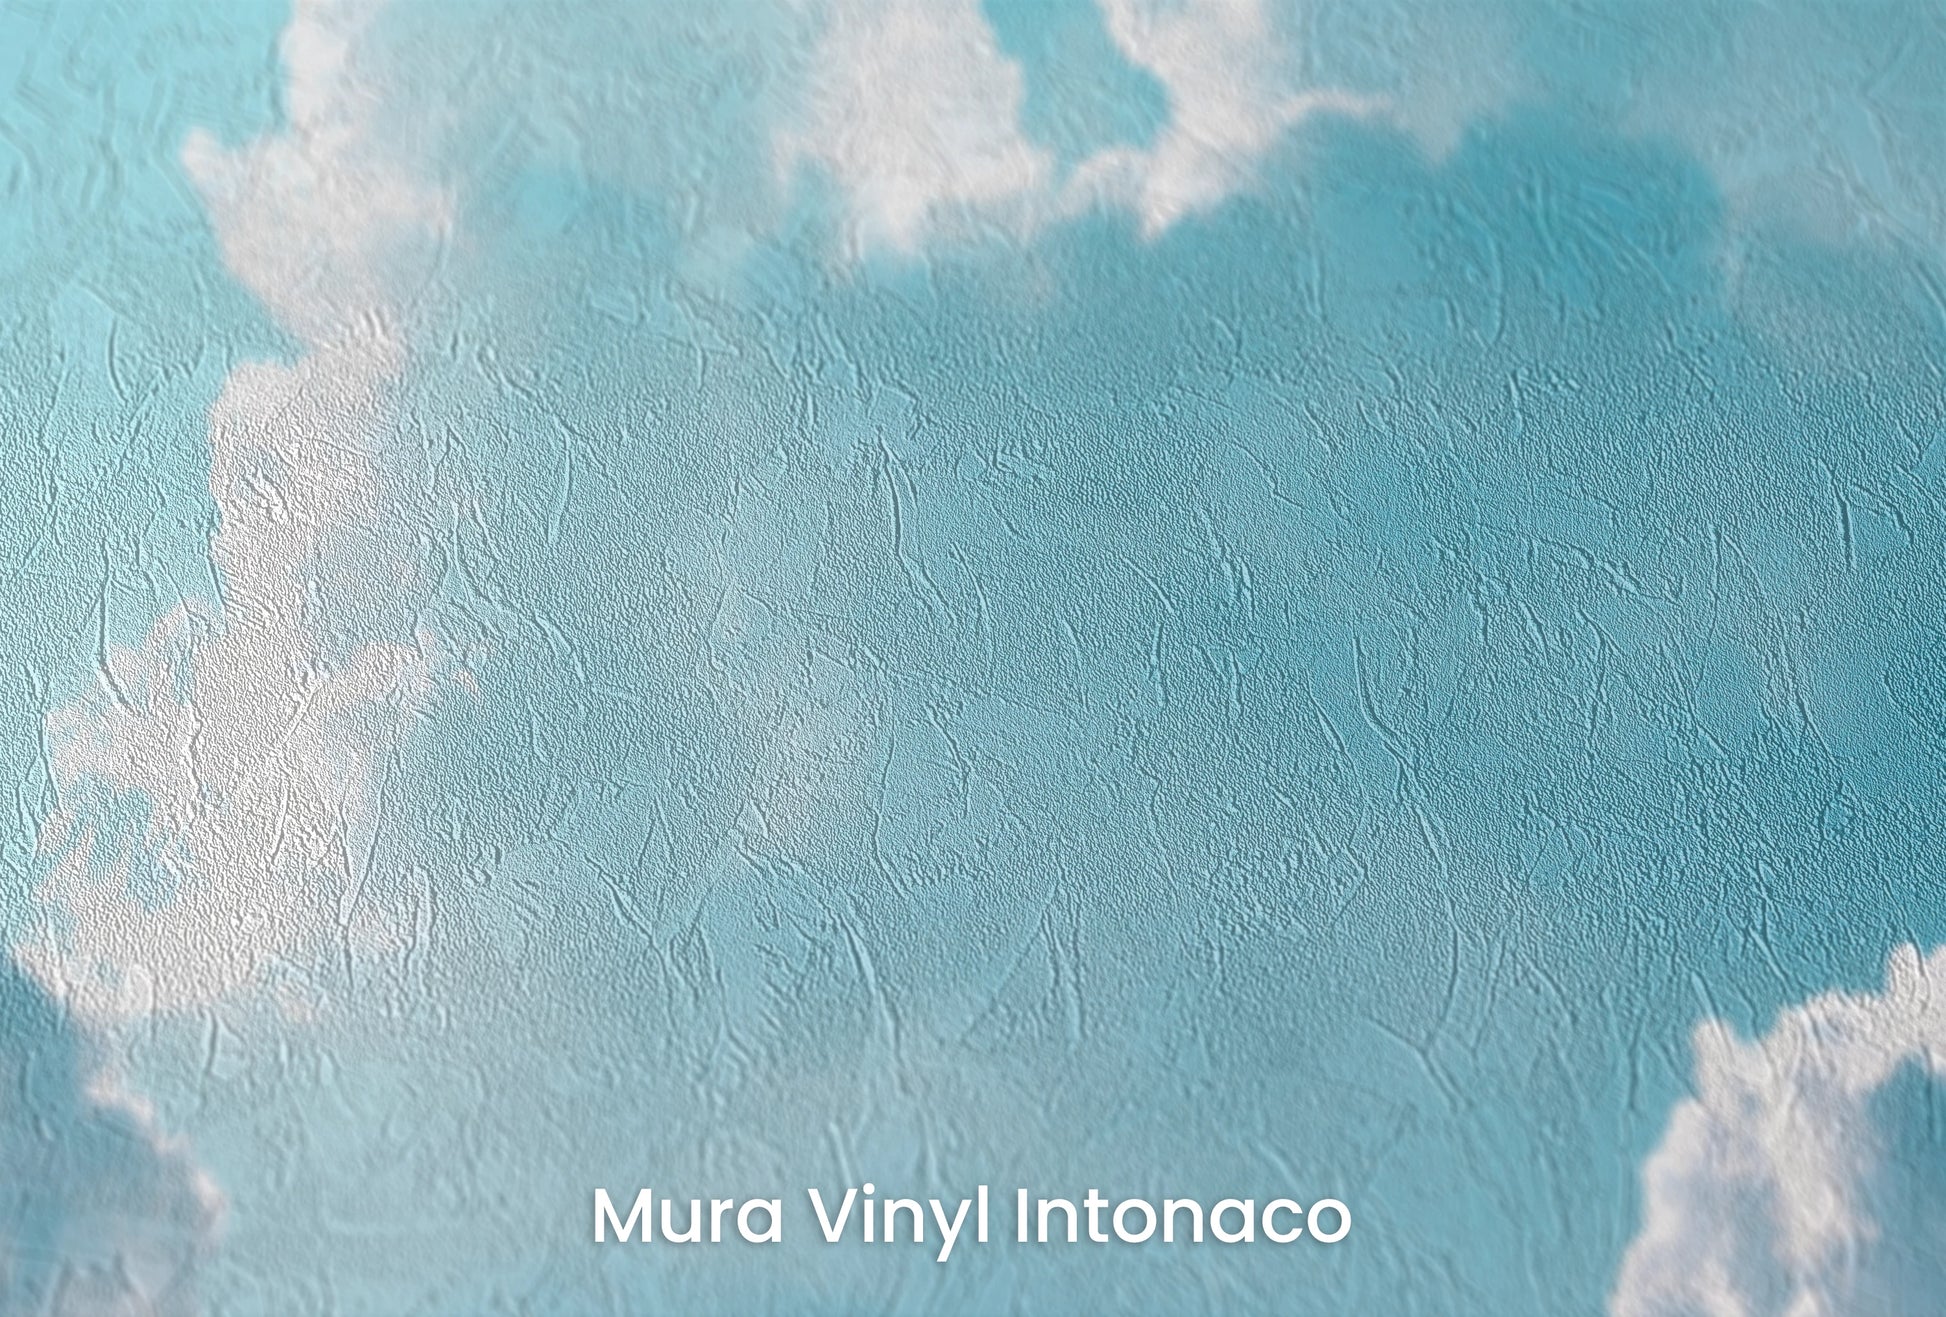 Zbliżenie na artystyczną fototapetę o nazwie Azure Calm na podłożu Mura Vinyl Intonaco - struktura tartego tynku.